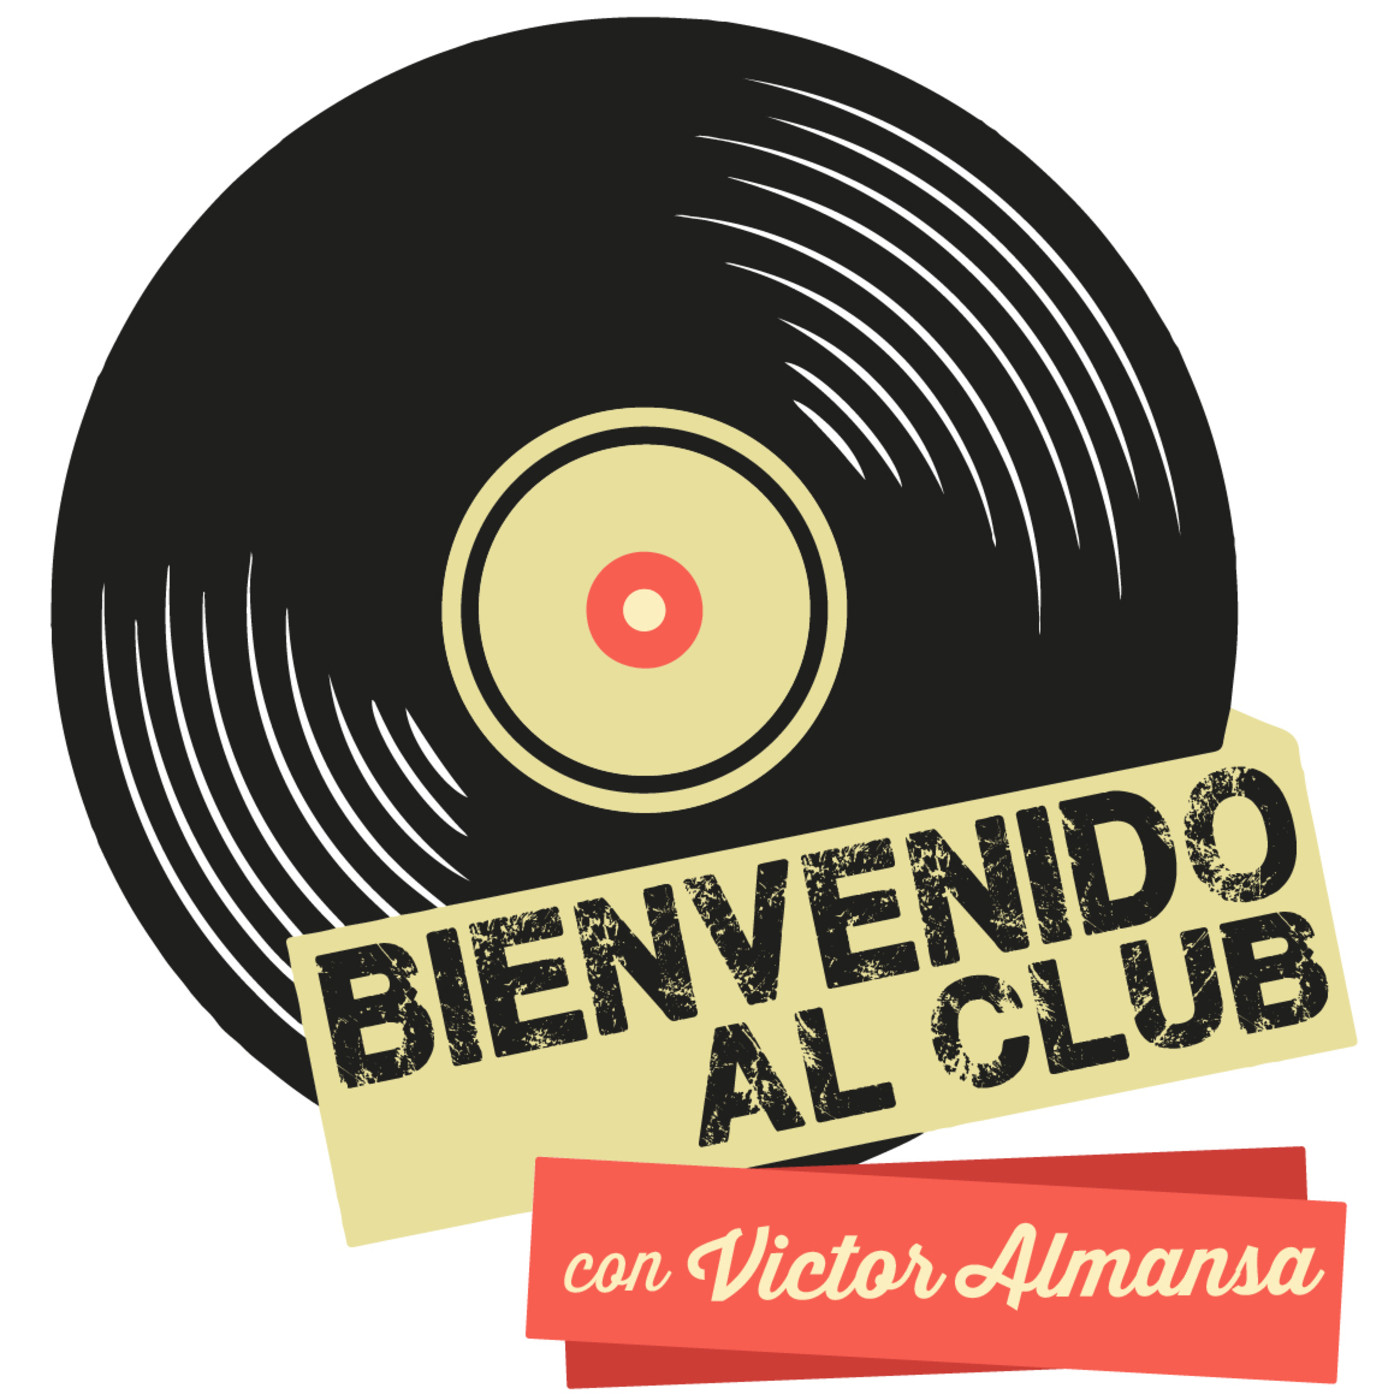 Bienvenido al Club con Victor Almansa (Miercoles 11 de Diciembre de 2019)